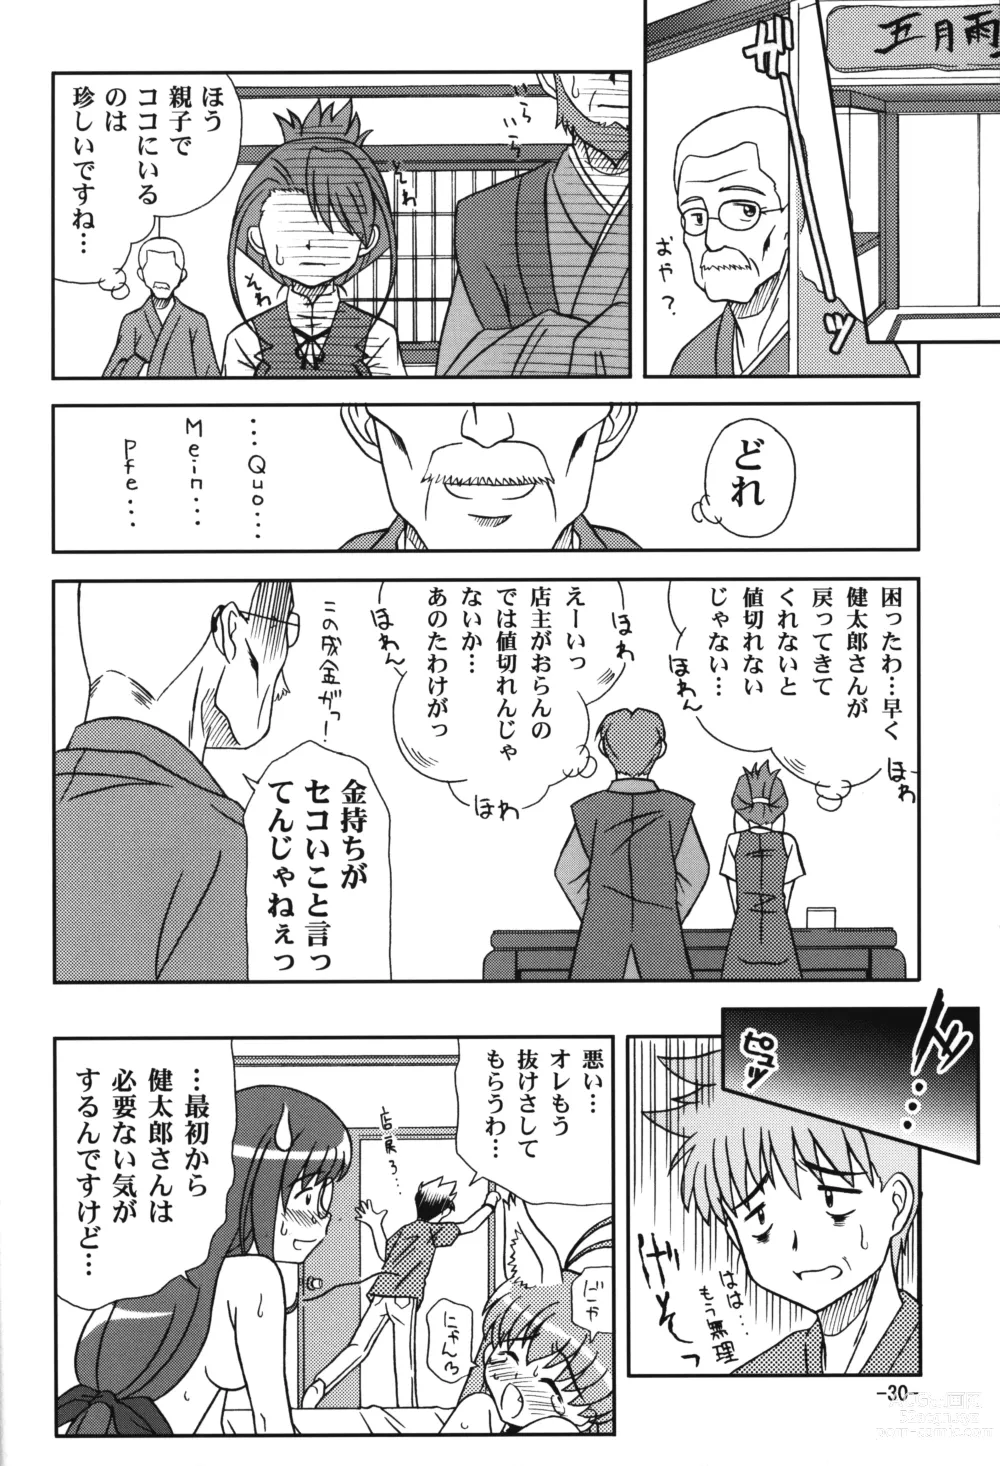 Page 29 of doujinshi MagiNyan